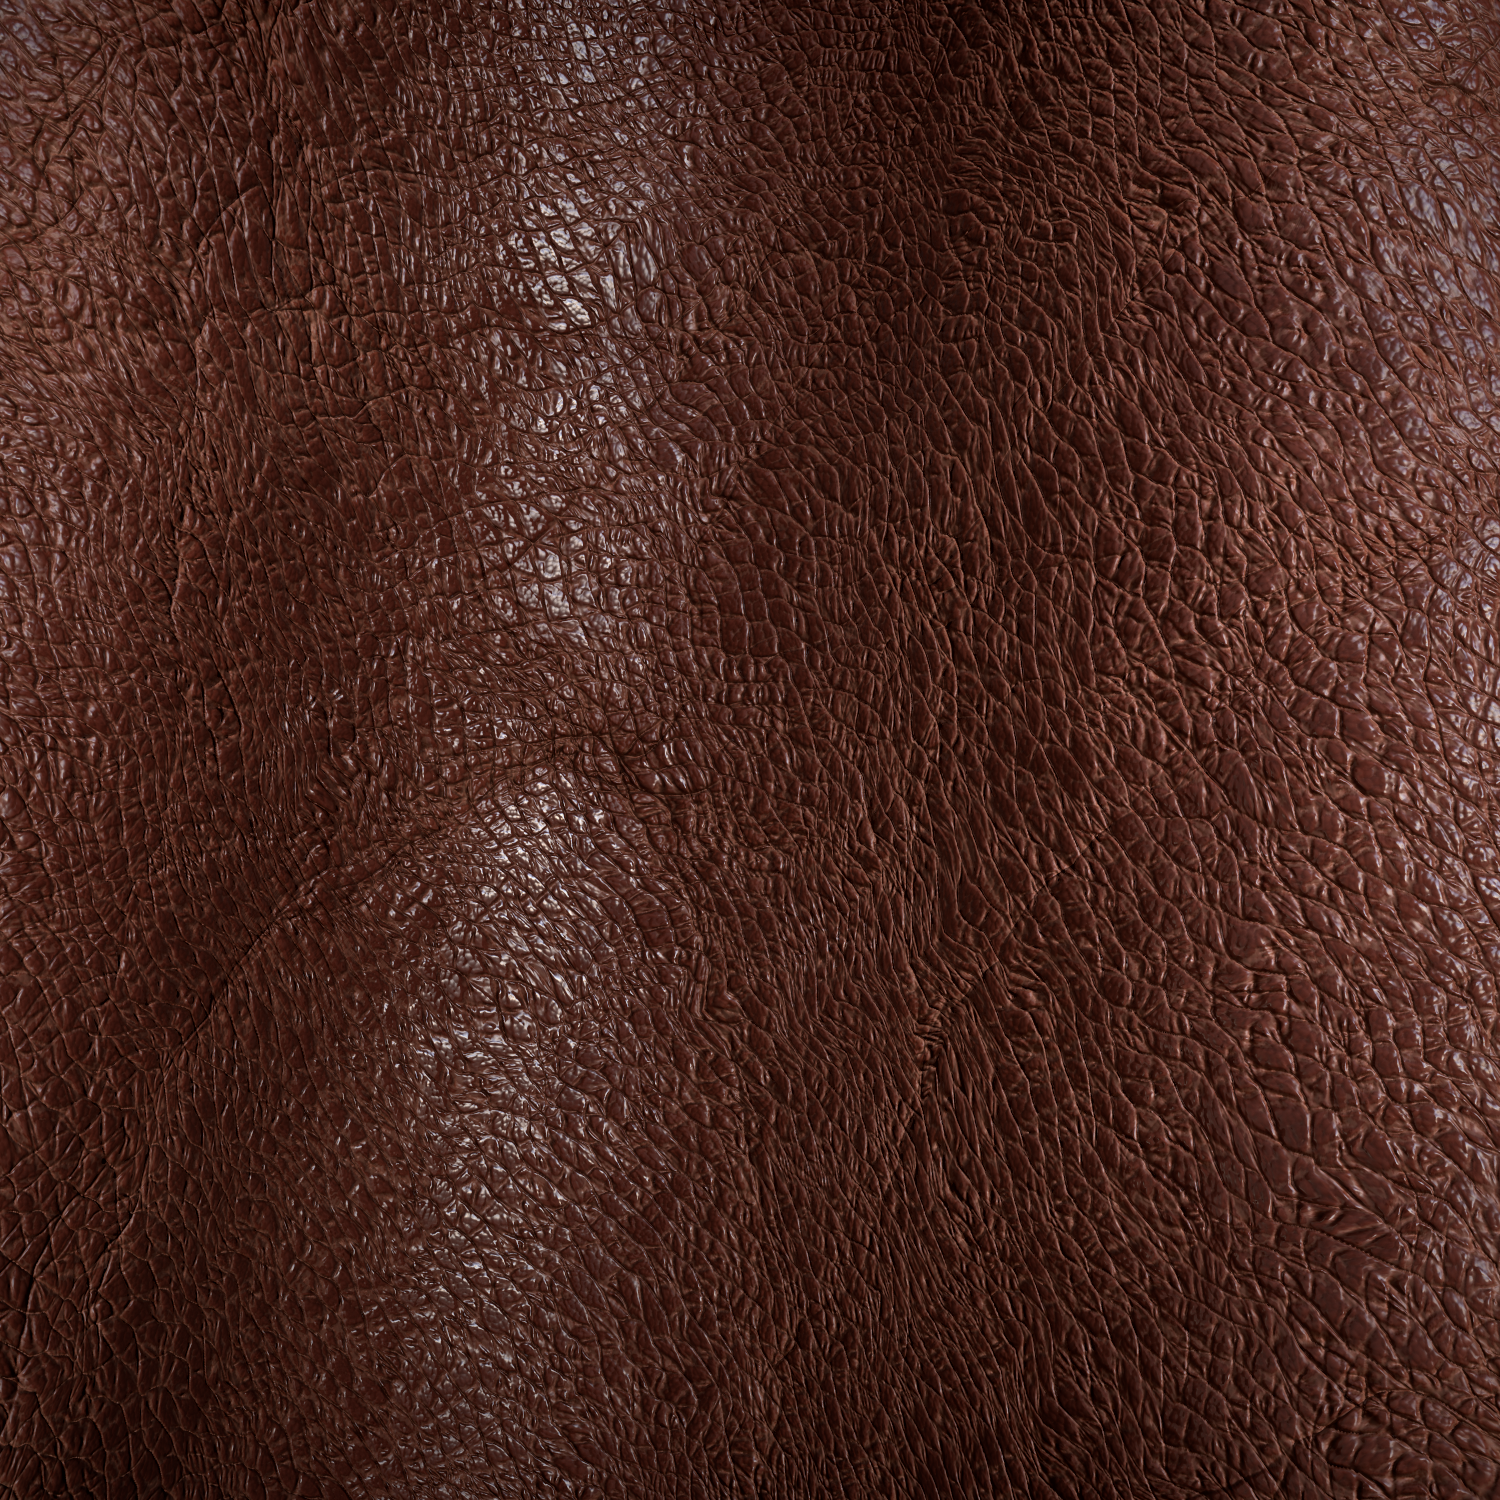 leather02 pbr 4k texture CG Textures in Fabric 3DExport